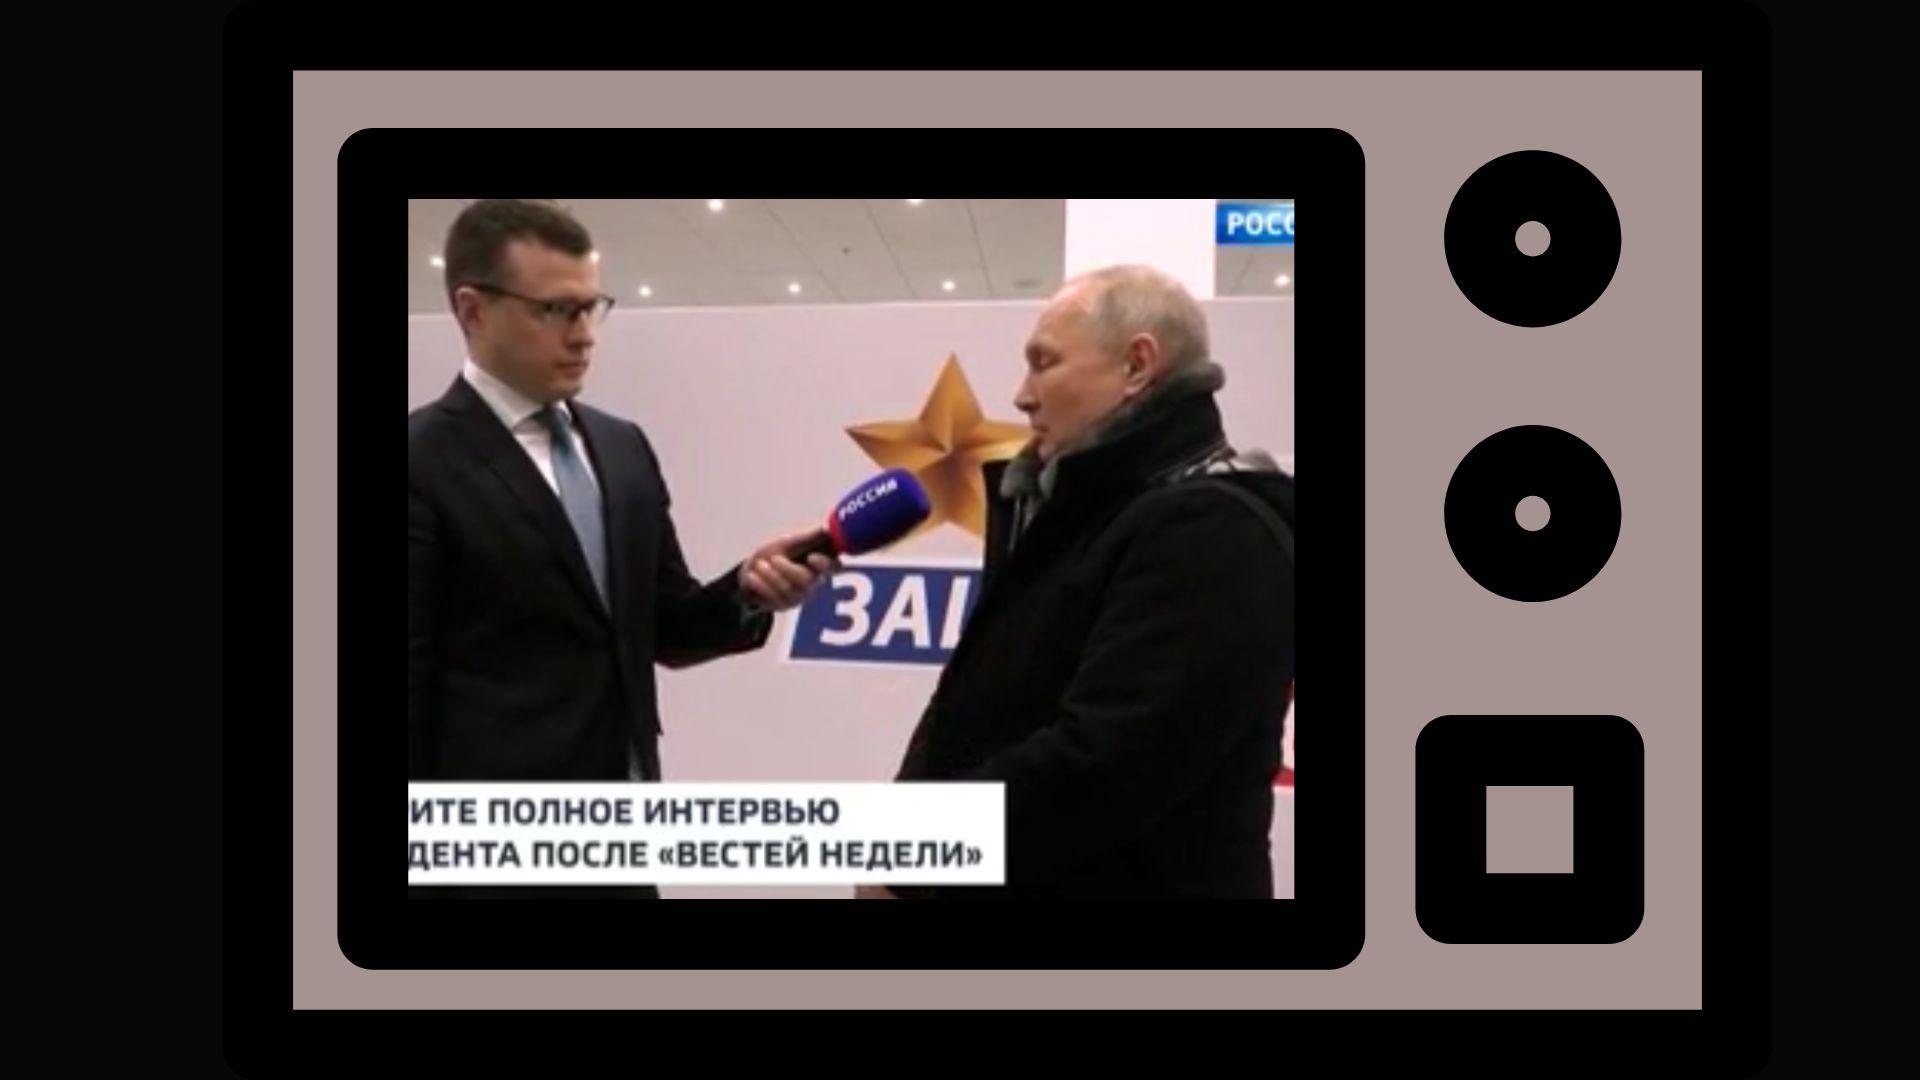 Grafika: w ramkę telewizora wstawione zdjęcie Putina w kurcte rozmawiającego z młodym dziennikarzem telewizjynym